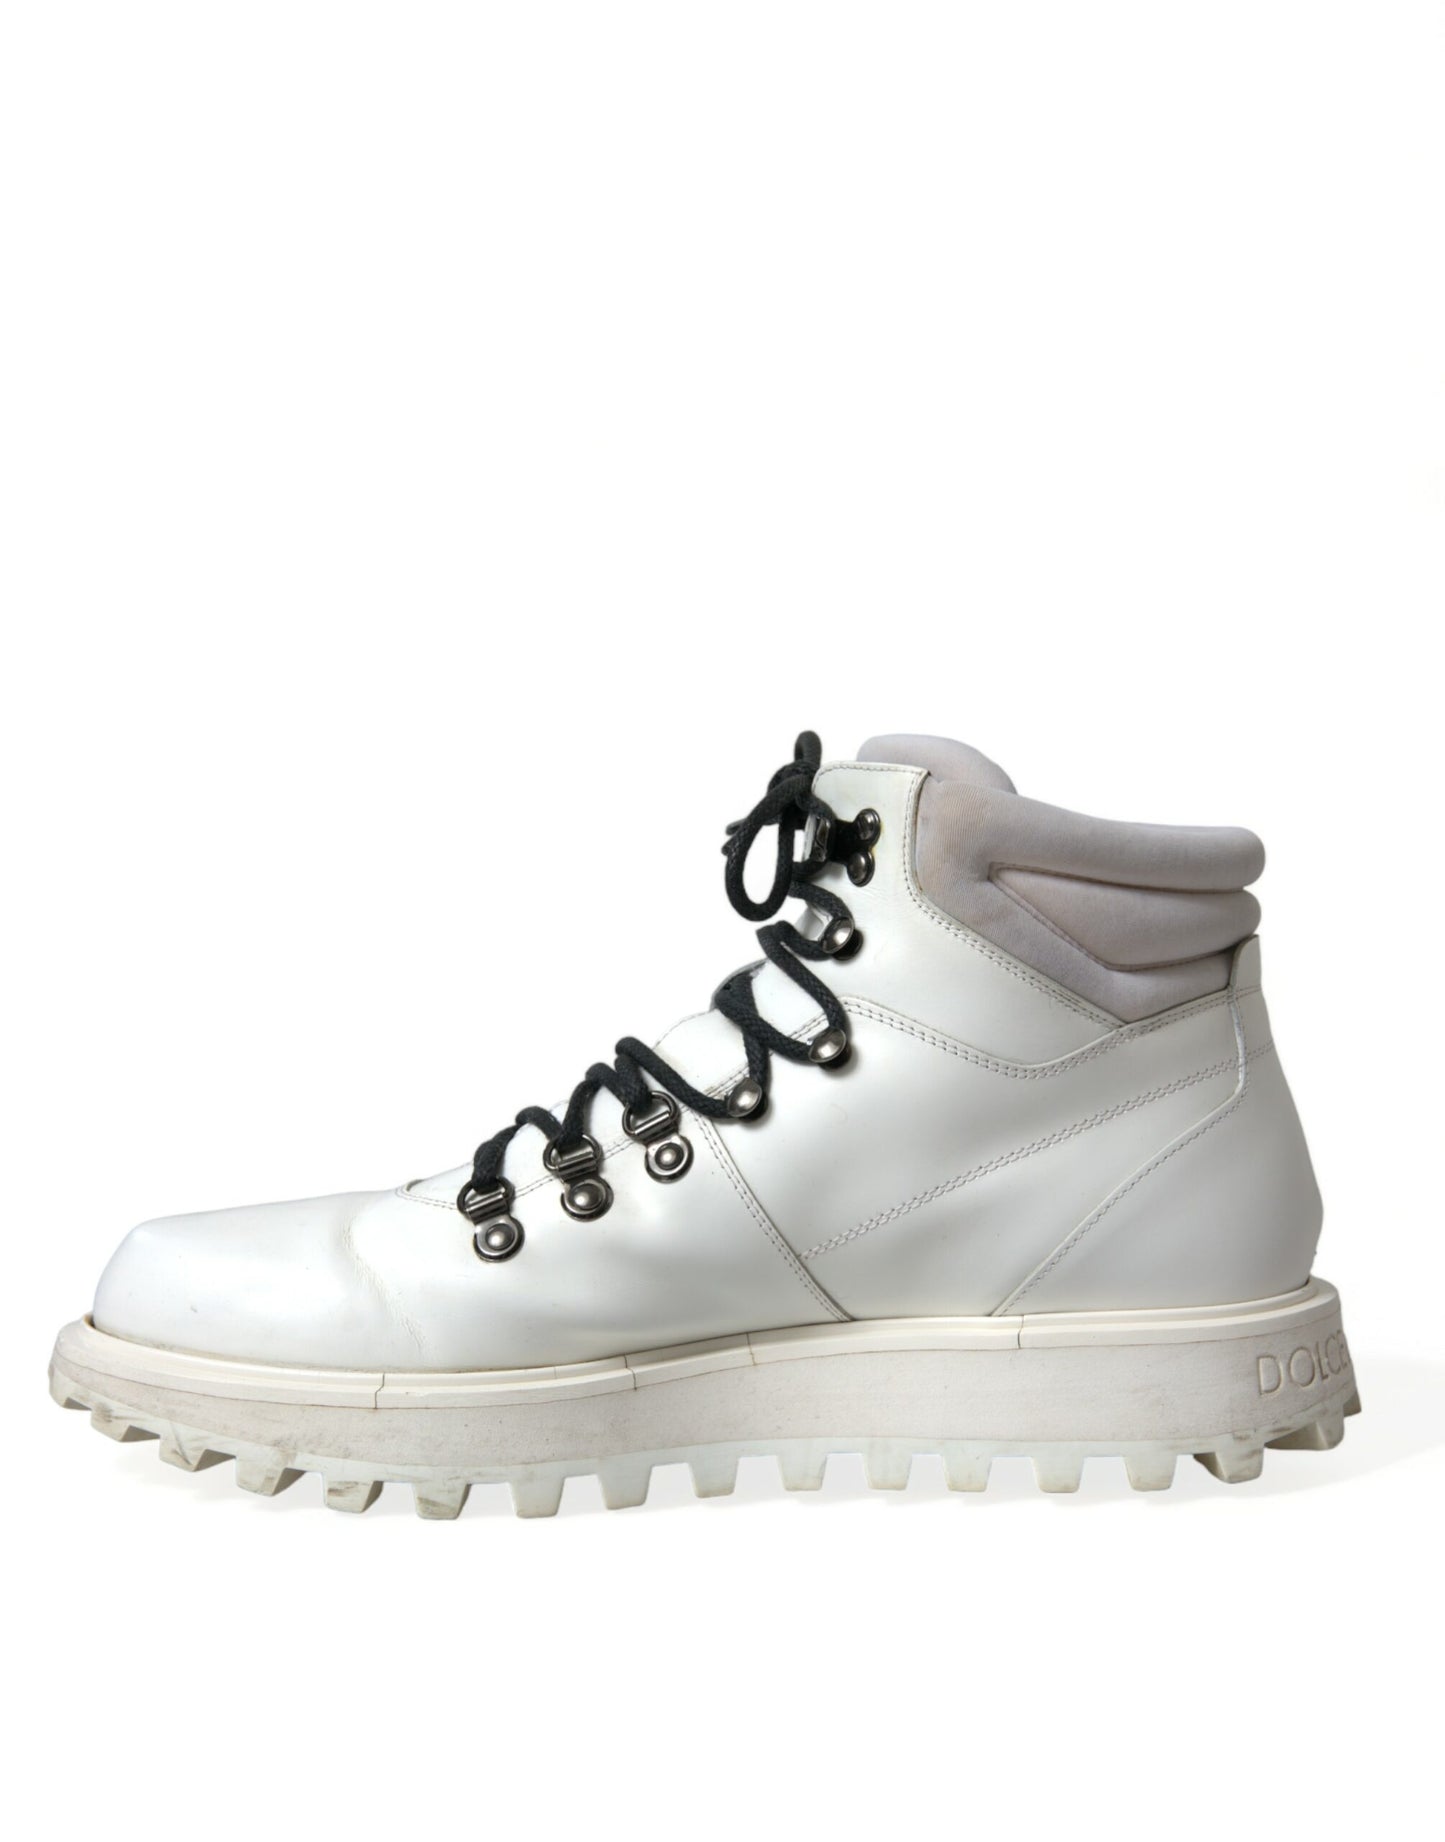 Dolce & Gabbana Pristine White Italian Ankle Boots - DEA STILOSA MILANO